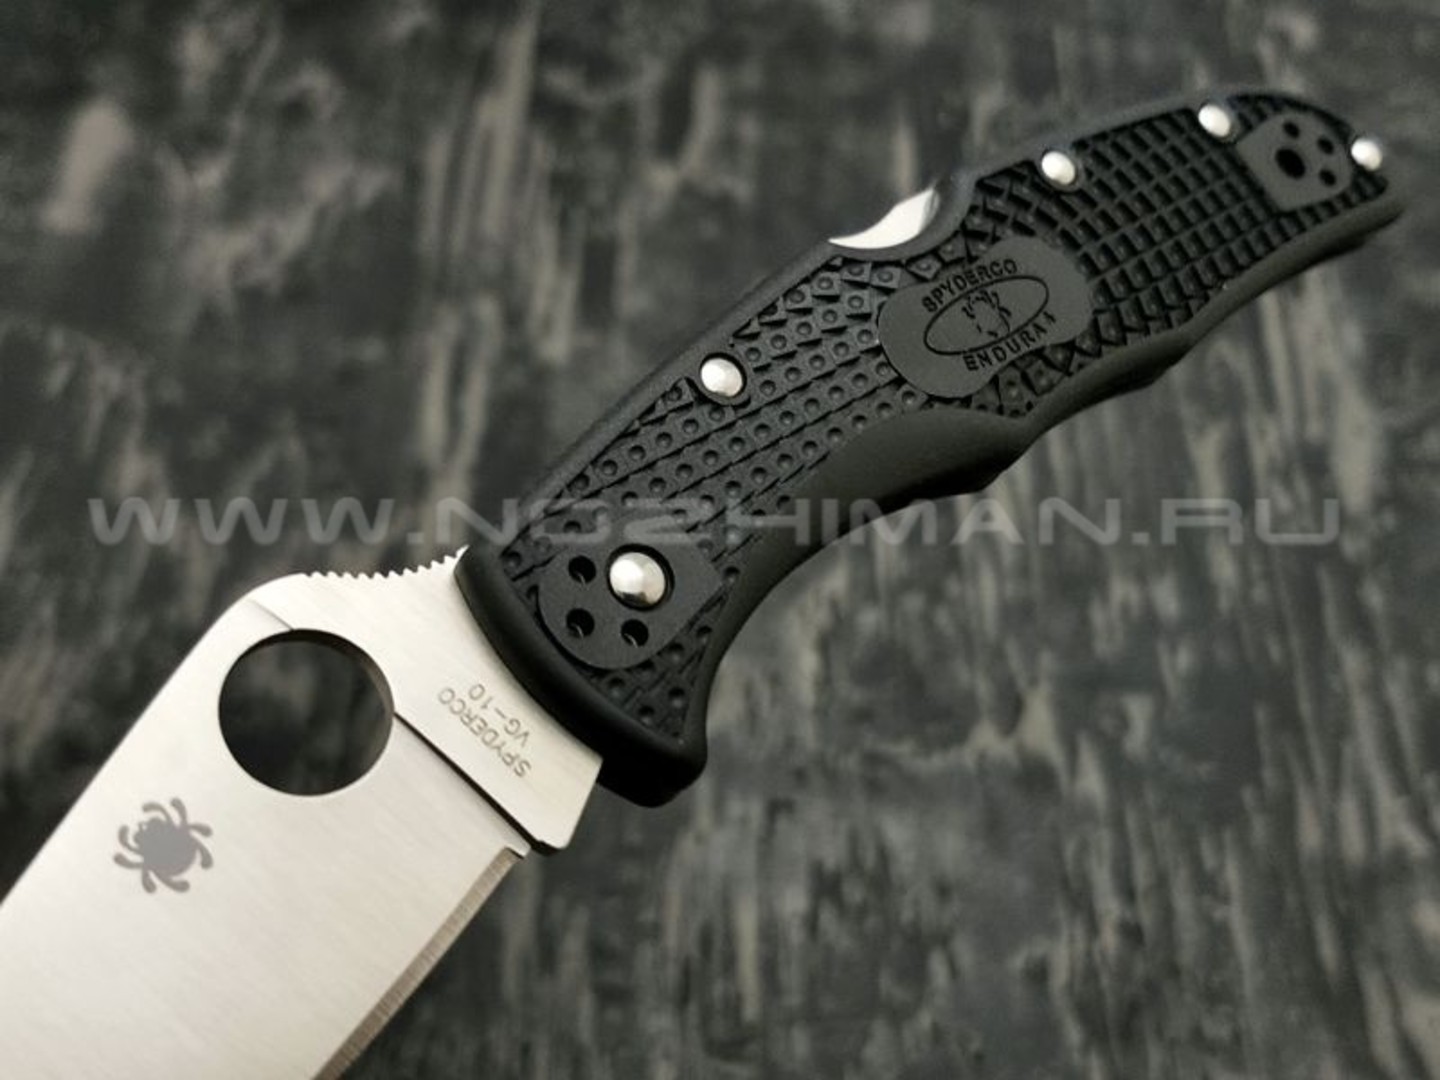 Нож Spyderco Endura 4 Flat Ground Black C10FPBK, сталь VG-10 satin, рукоять FRN Black